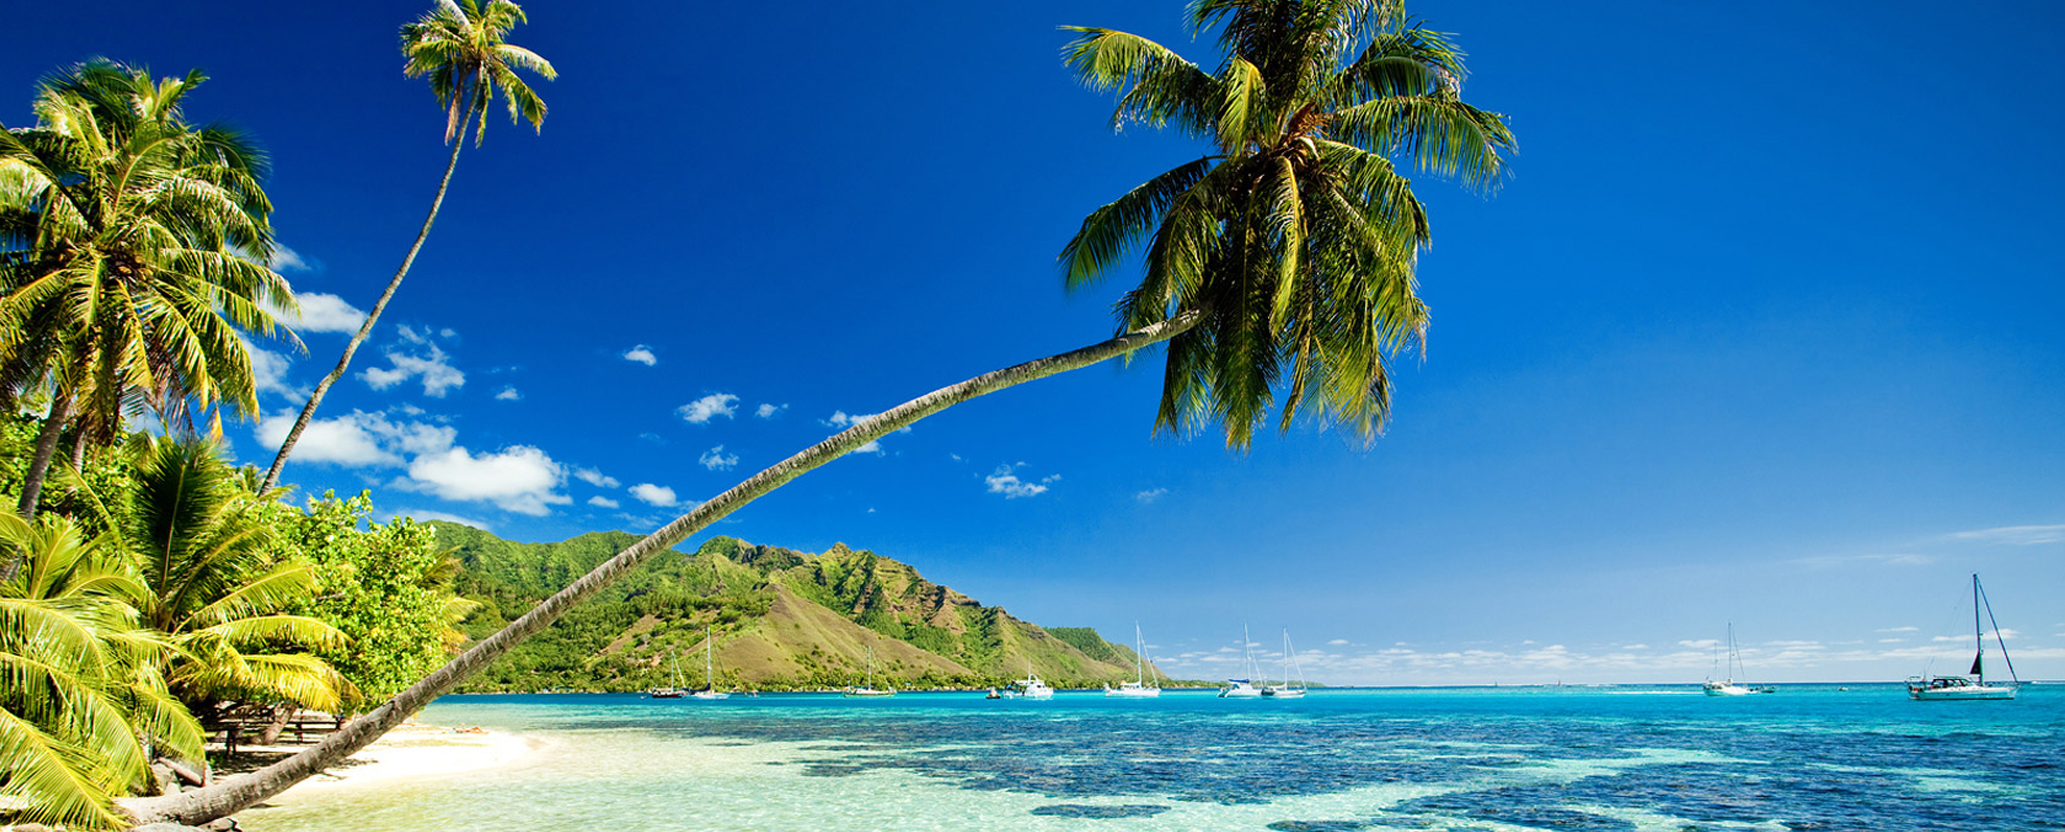 Karibik hier lässt sich lernen mit Urlaub verbinden